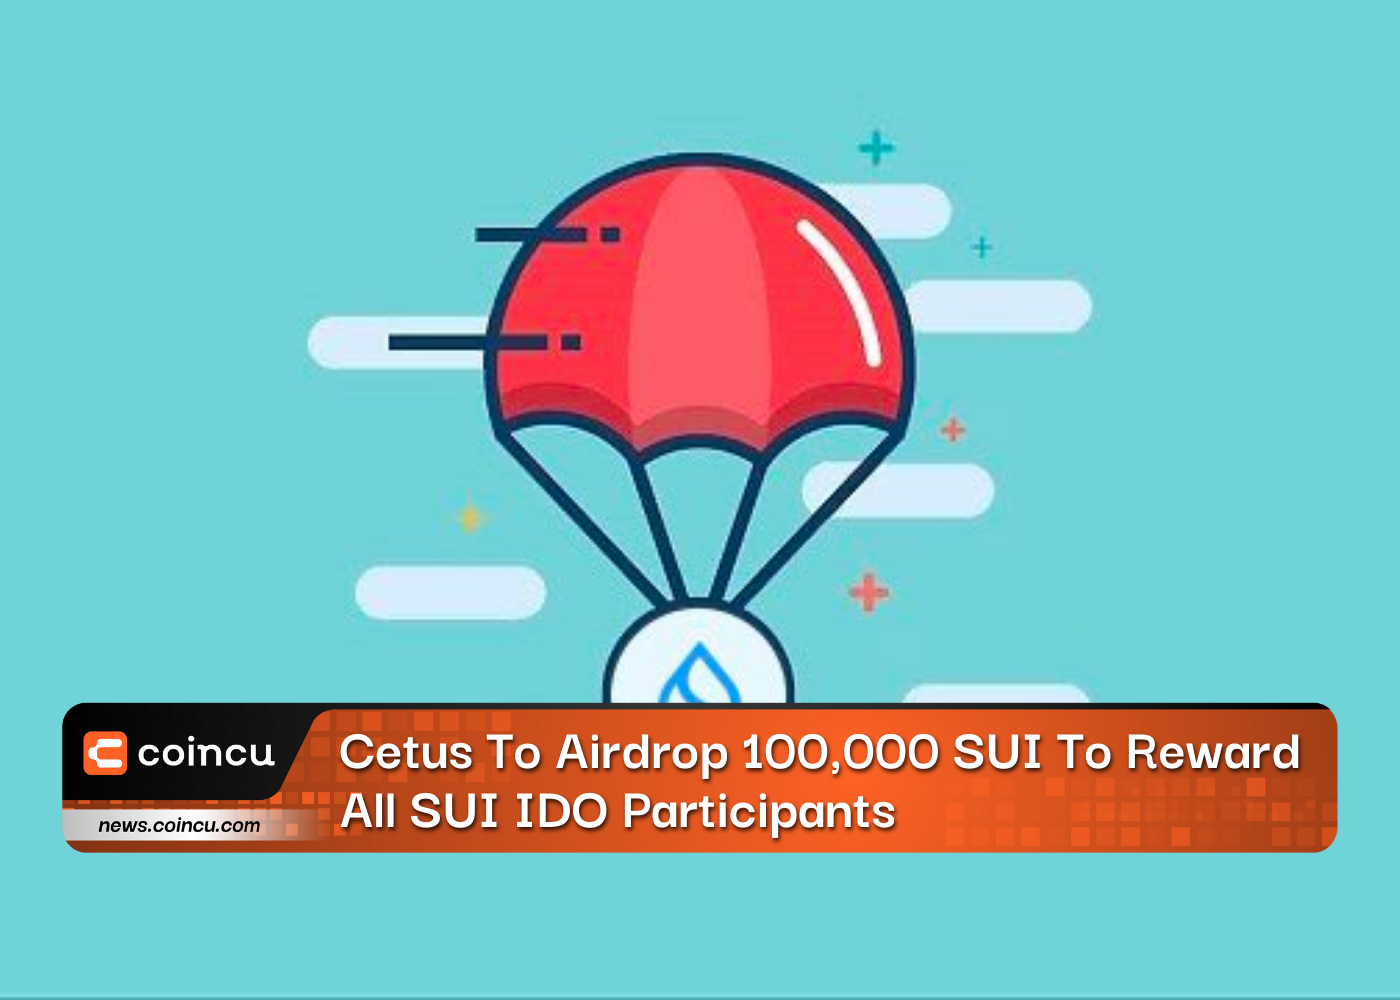 Cetus fará airdrop de 100,000 SUI para recompensar todos os participantes do SUI IDO